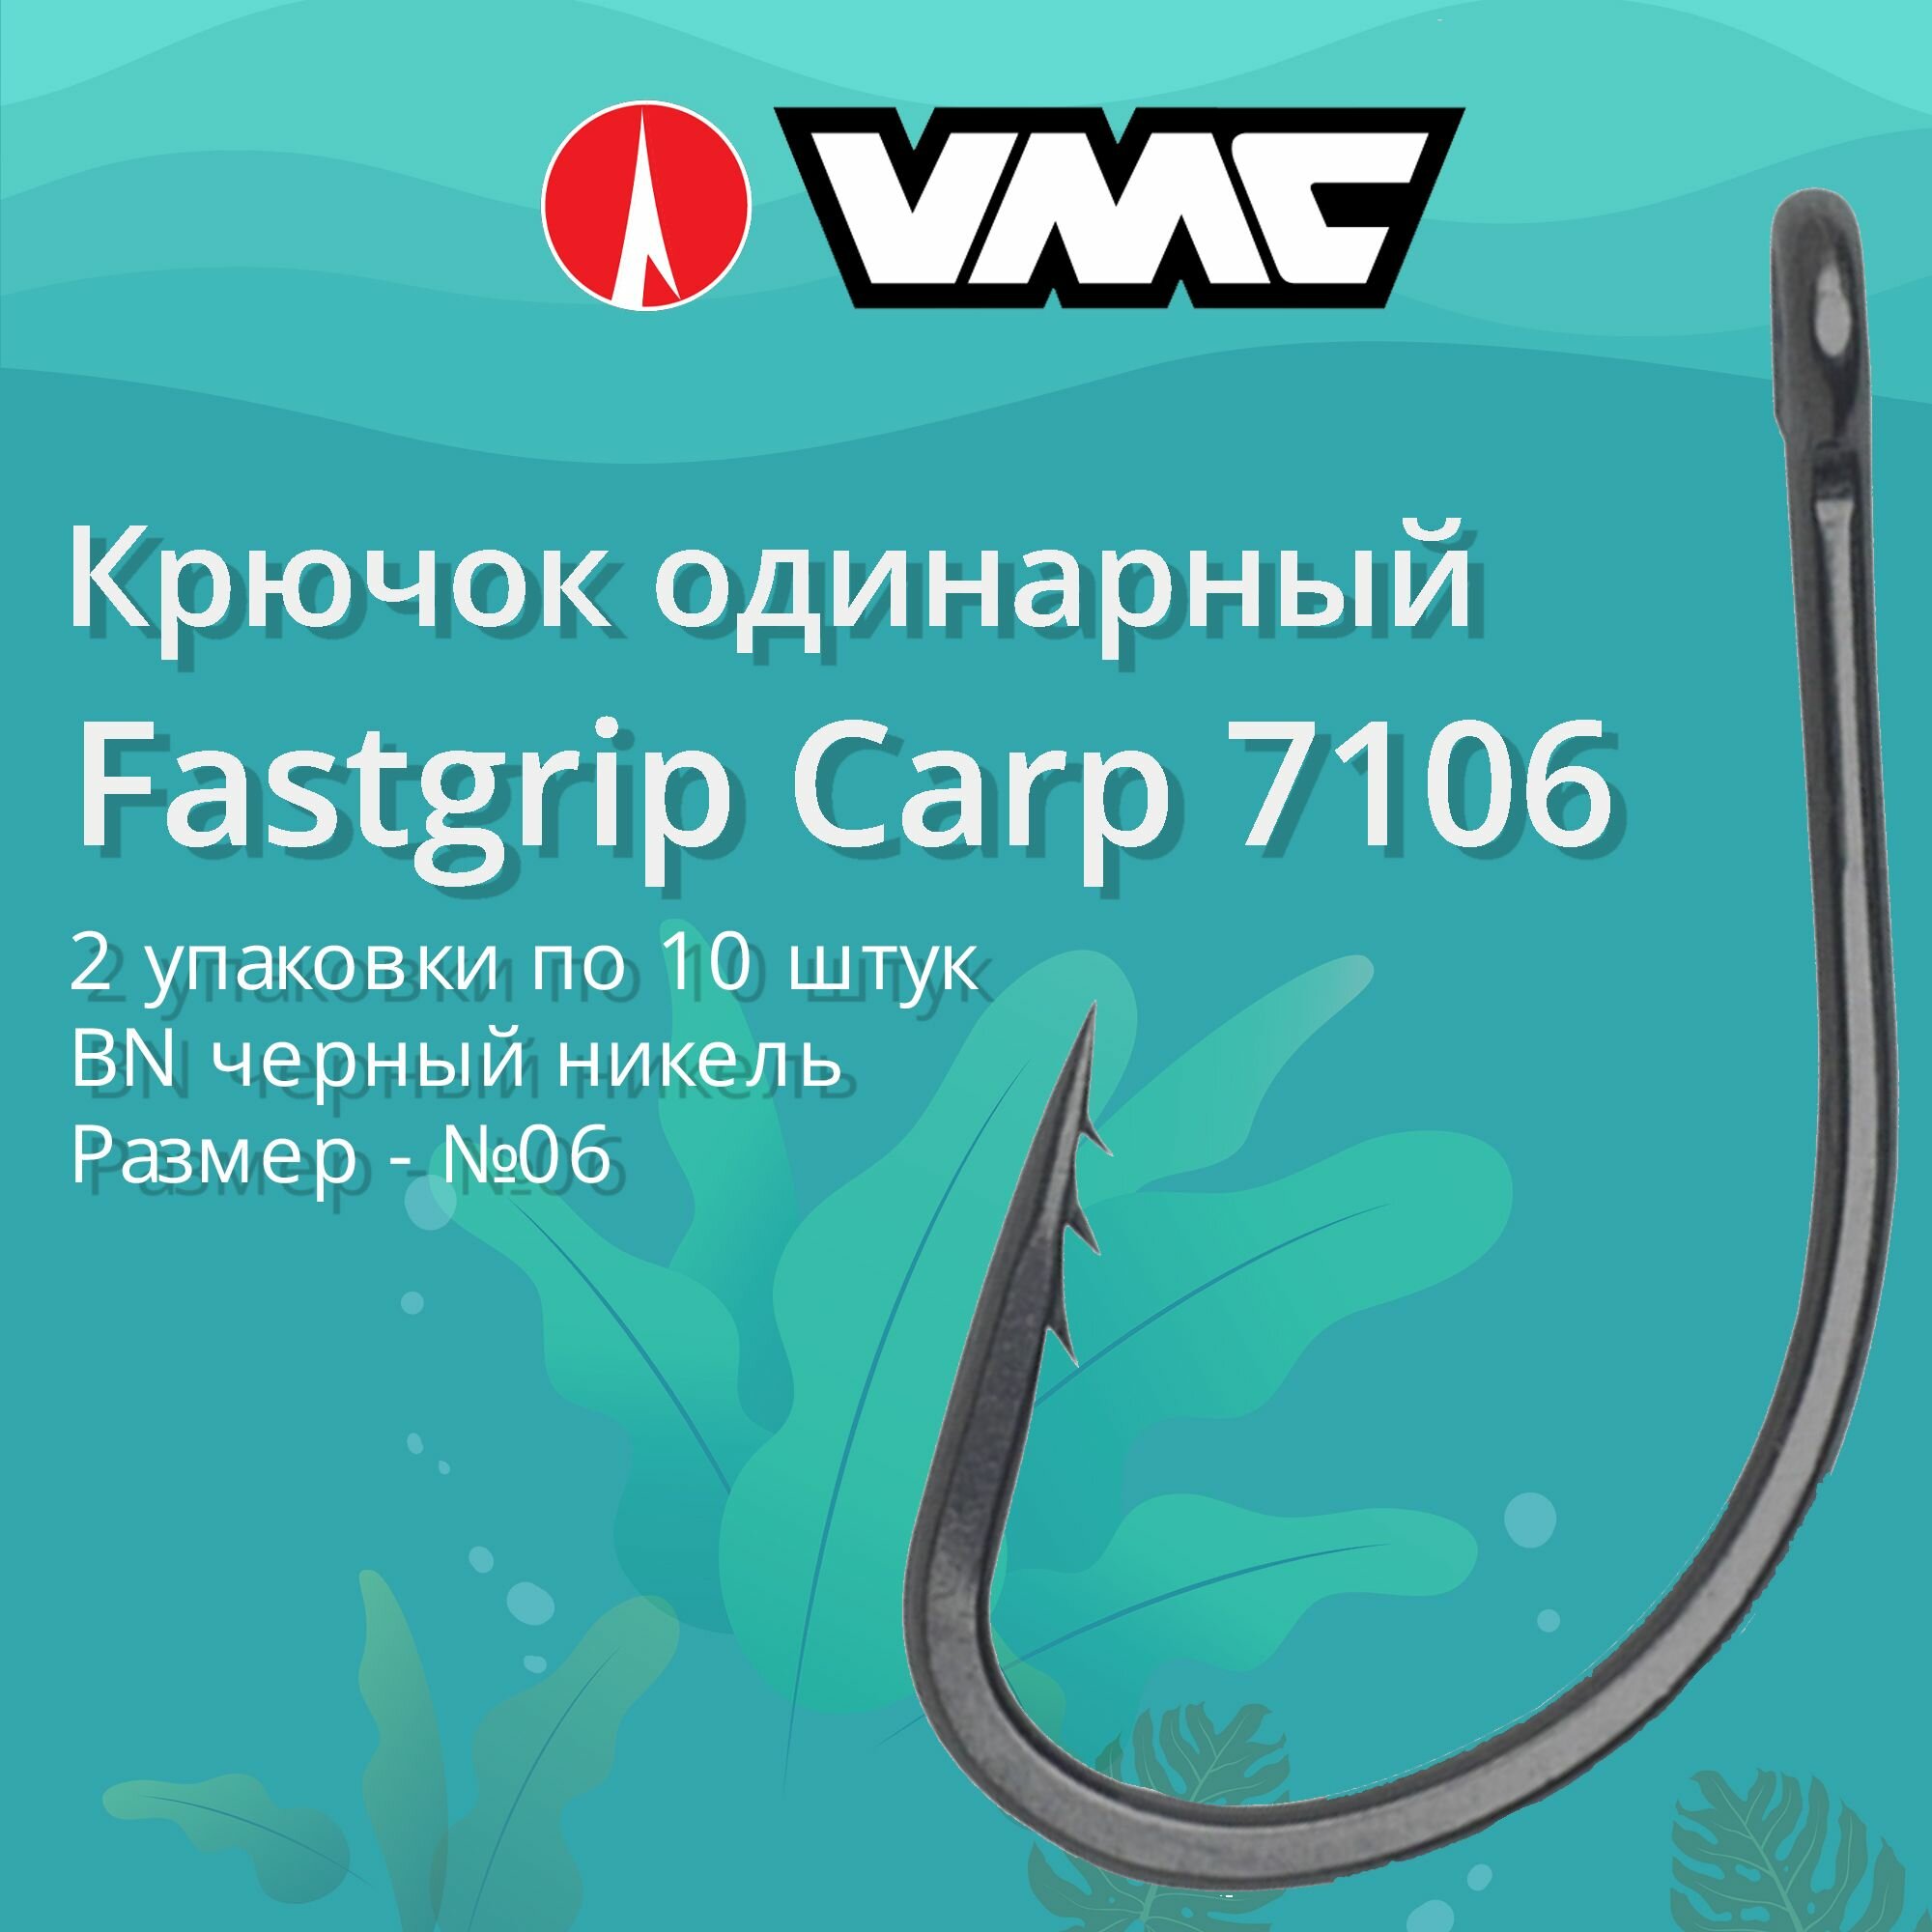 Крючки для рыбалки (одинарный) VMC Fastgrip Carp 7106 BN (черн. никель) №06 2 упаковки по 10 штук